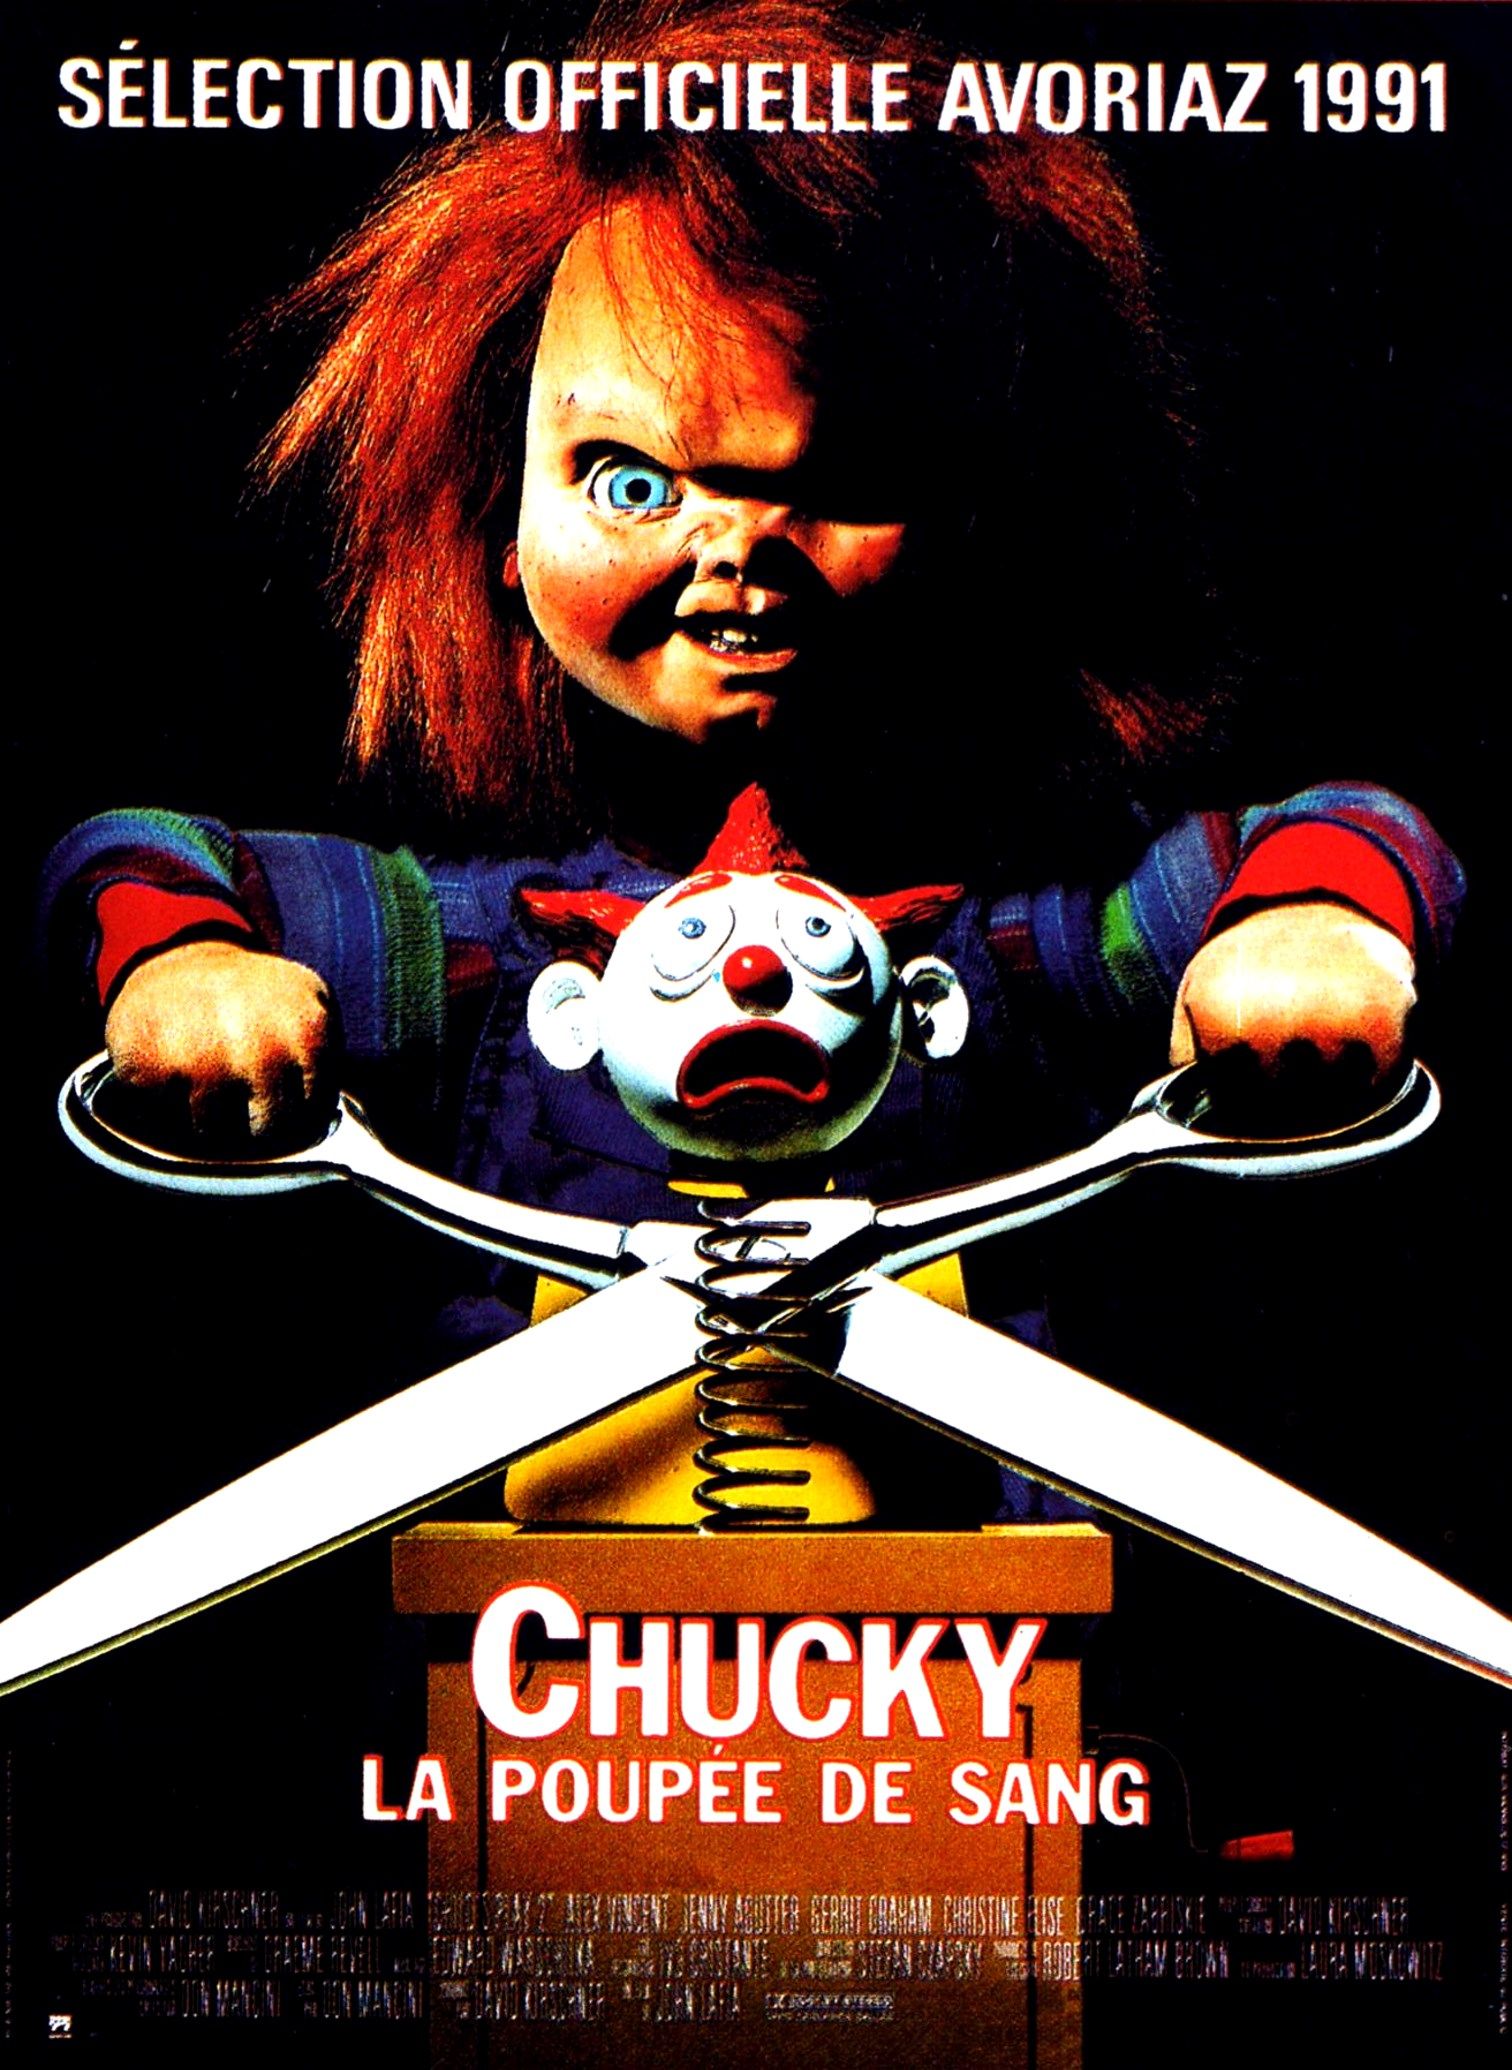 Chucky - Chucky 1,2,3,4,5,6,7,2019 Chucky_La_Poupee_de_sang